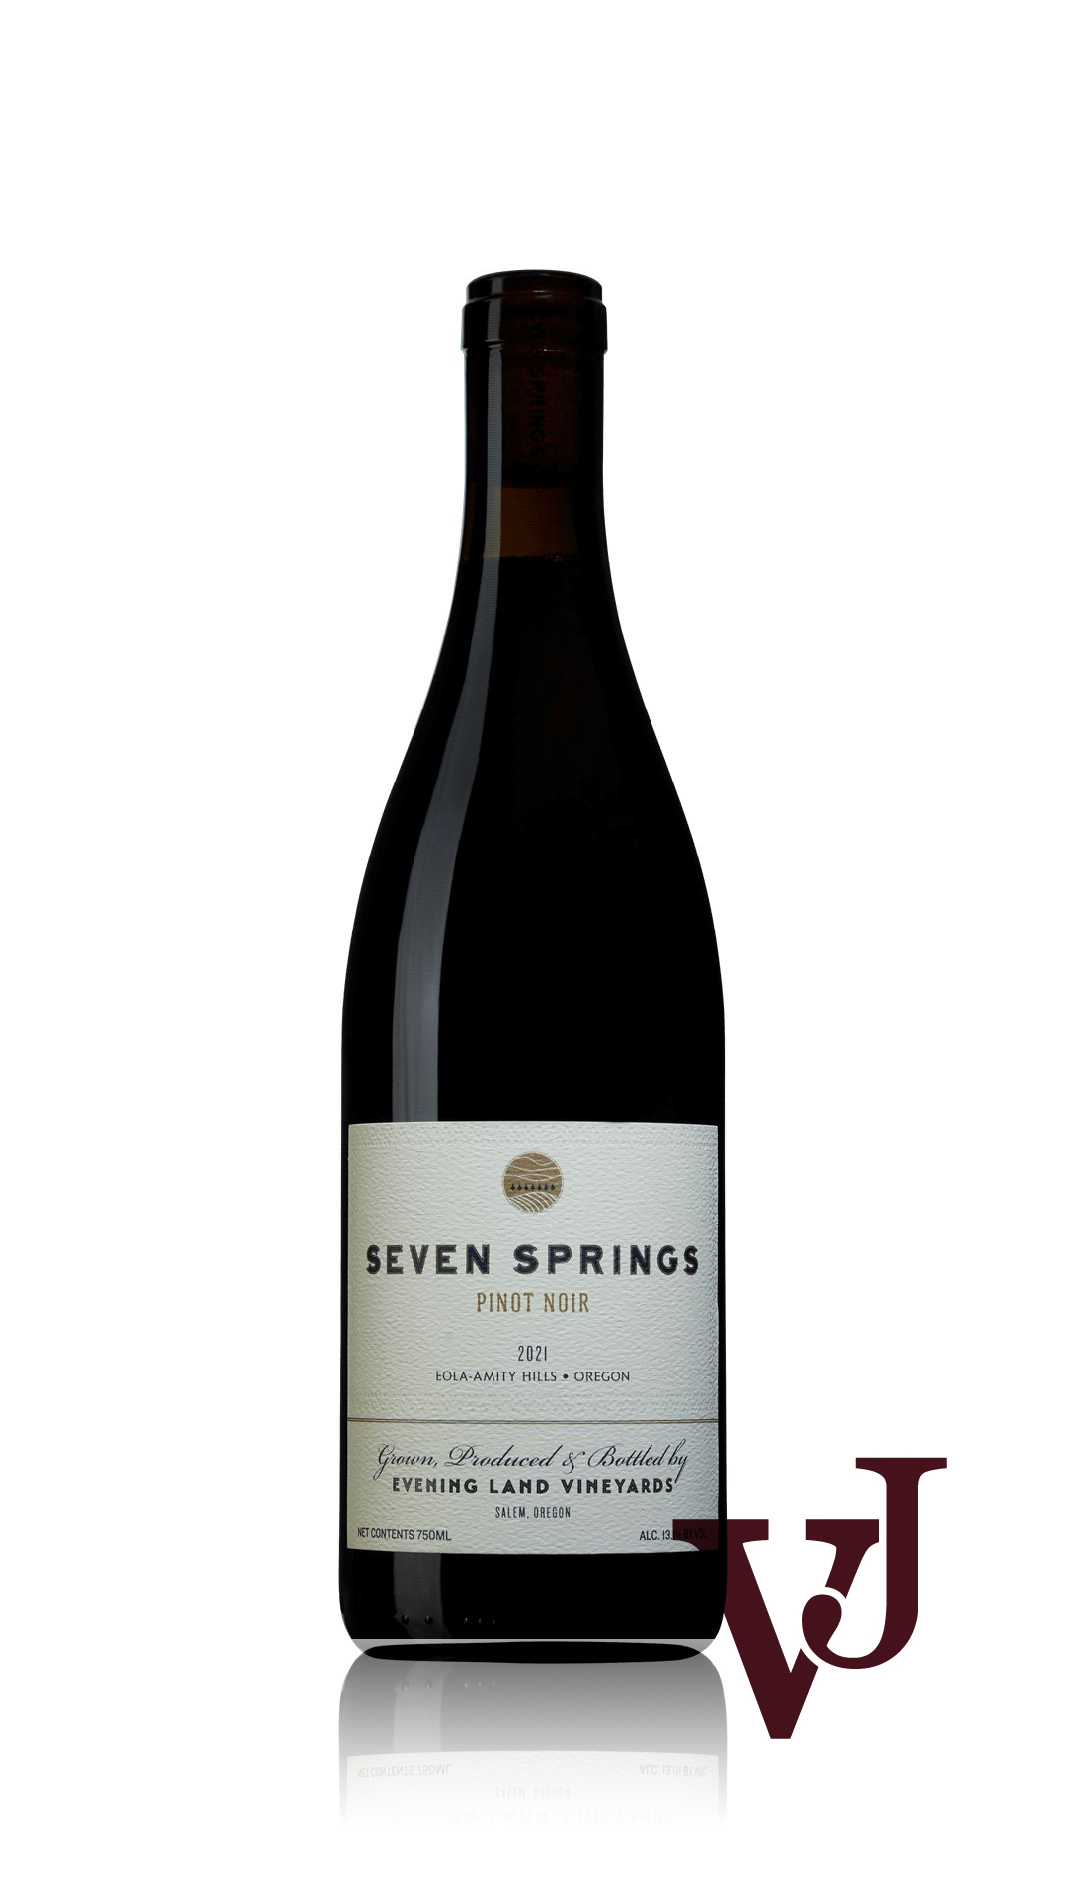 Rött Vin - Seven Springs Pinot Noir 2021 artikel nummer 9045301 från producenten Evening Land Vineyards från USA - Vinjournalen.se